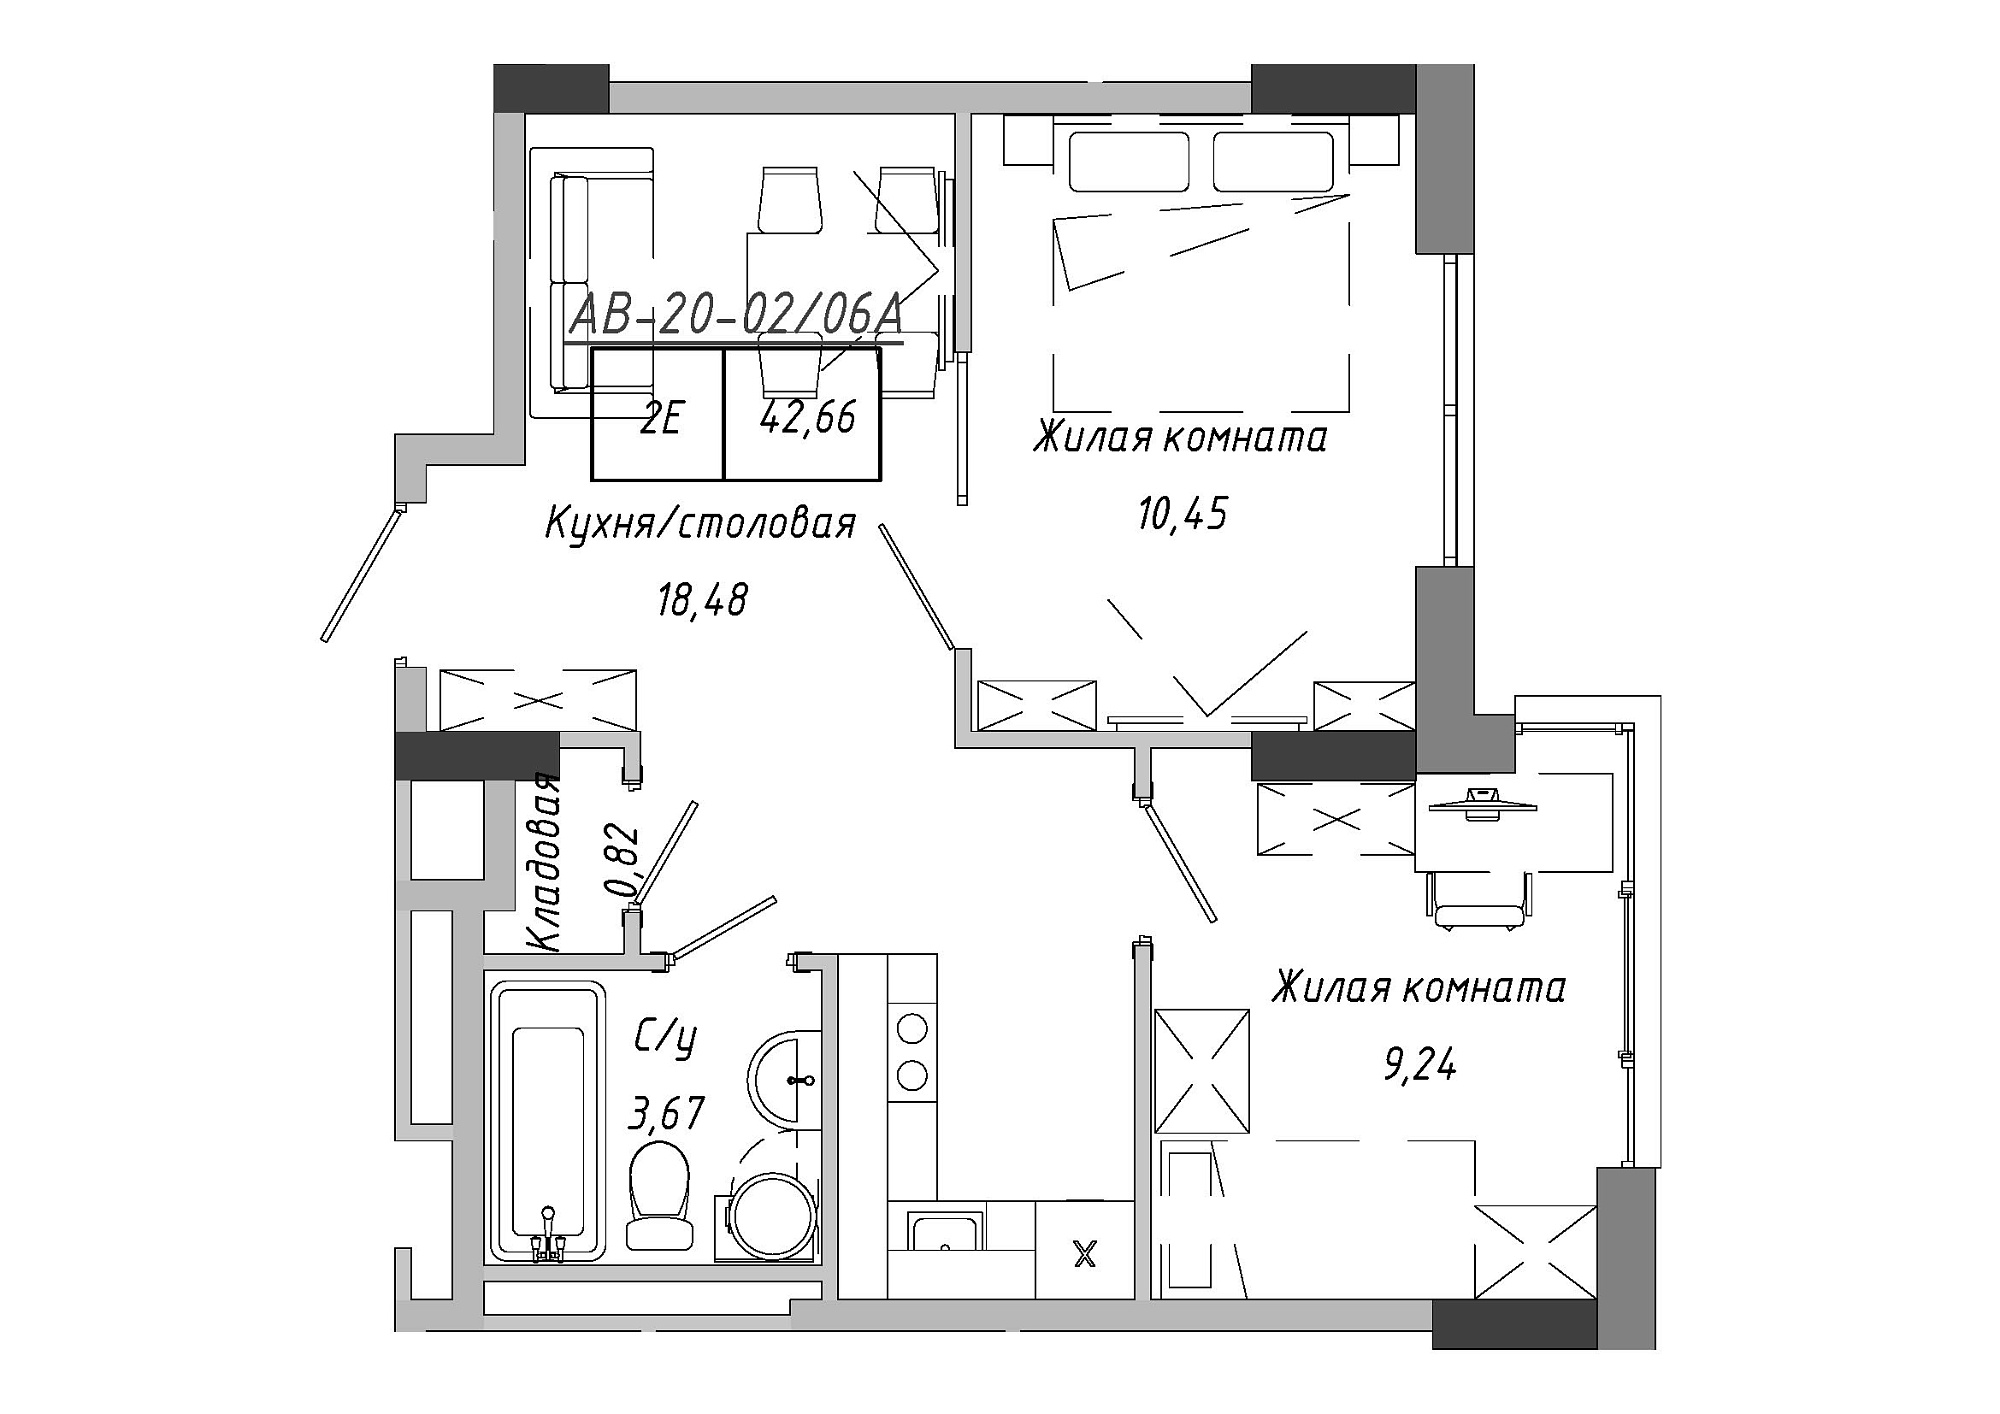 Планировка 2-к квартира площей 42.66м2, AB-20-02/0006а.